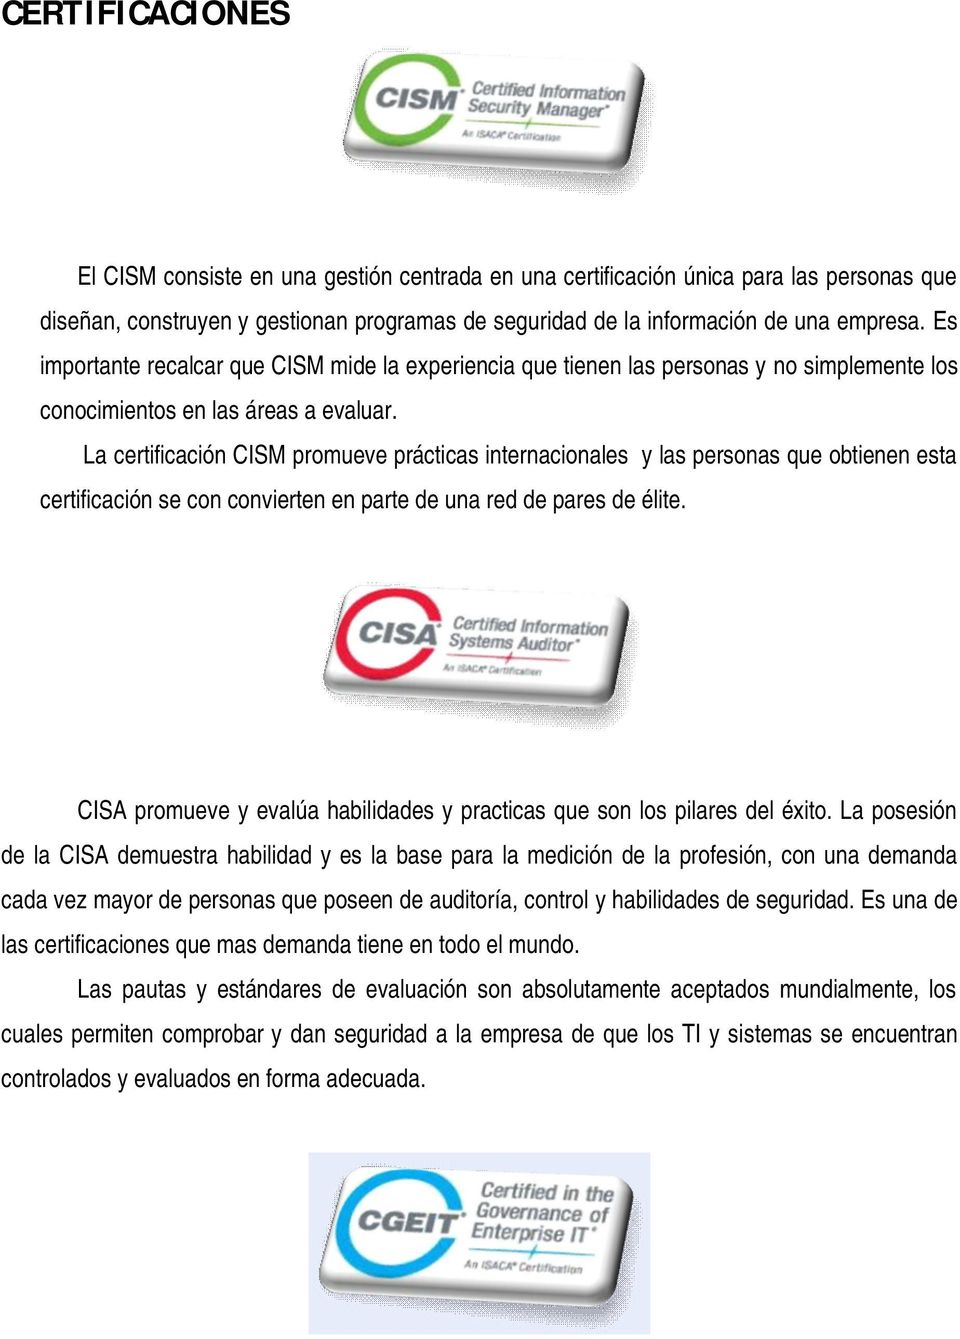 La certificación CISM promueve prácticas internacionales y las personas que obtienen esta certificación se con convierten en parte de una red de pares de élite.